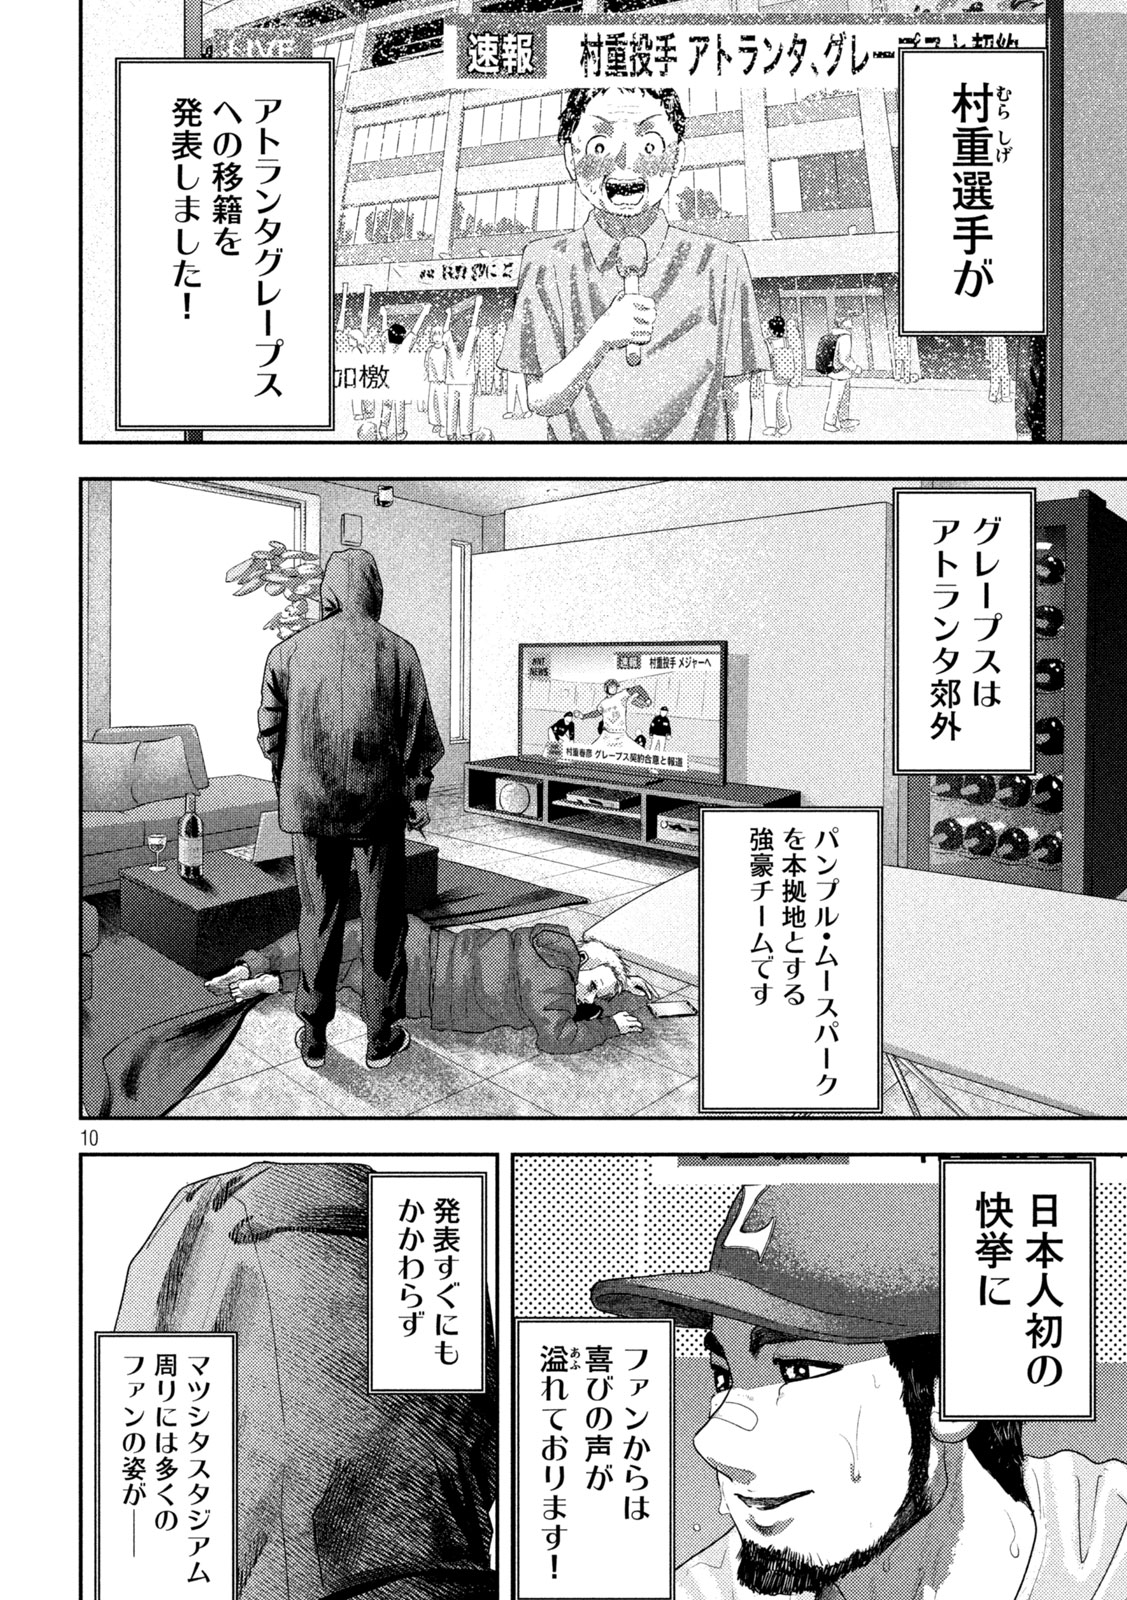 Nezumi no Koi - Chapter 29 - Page 11